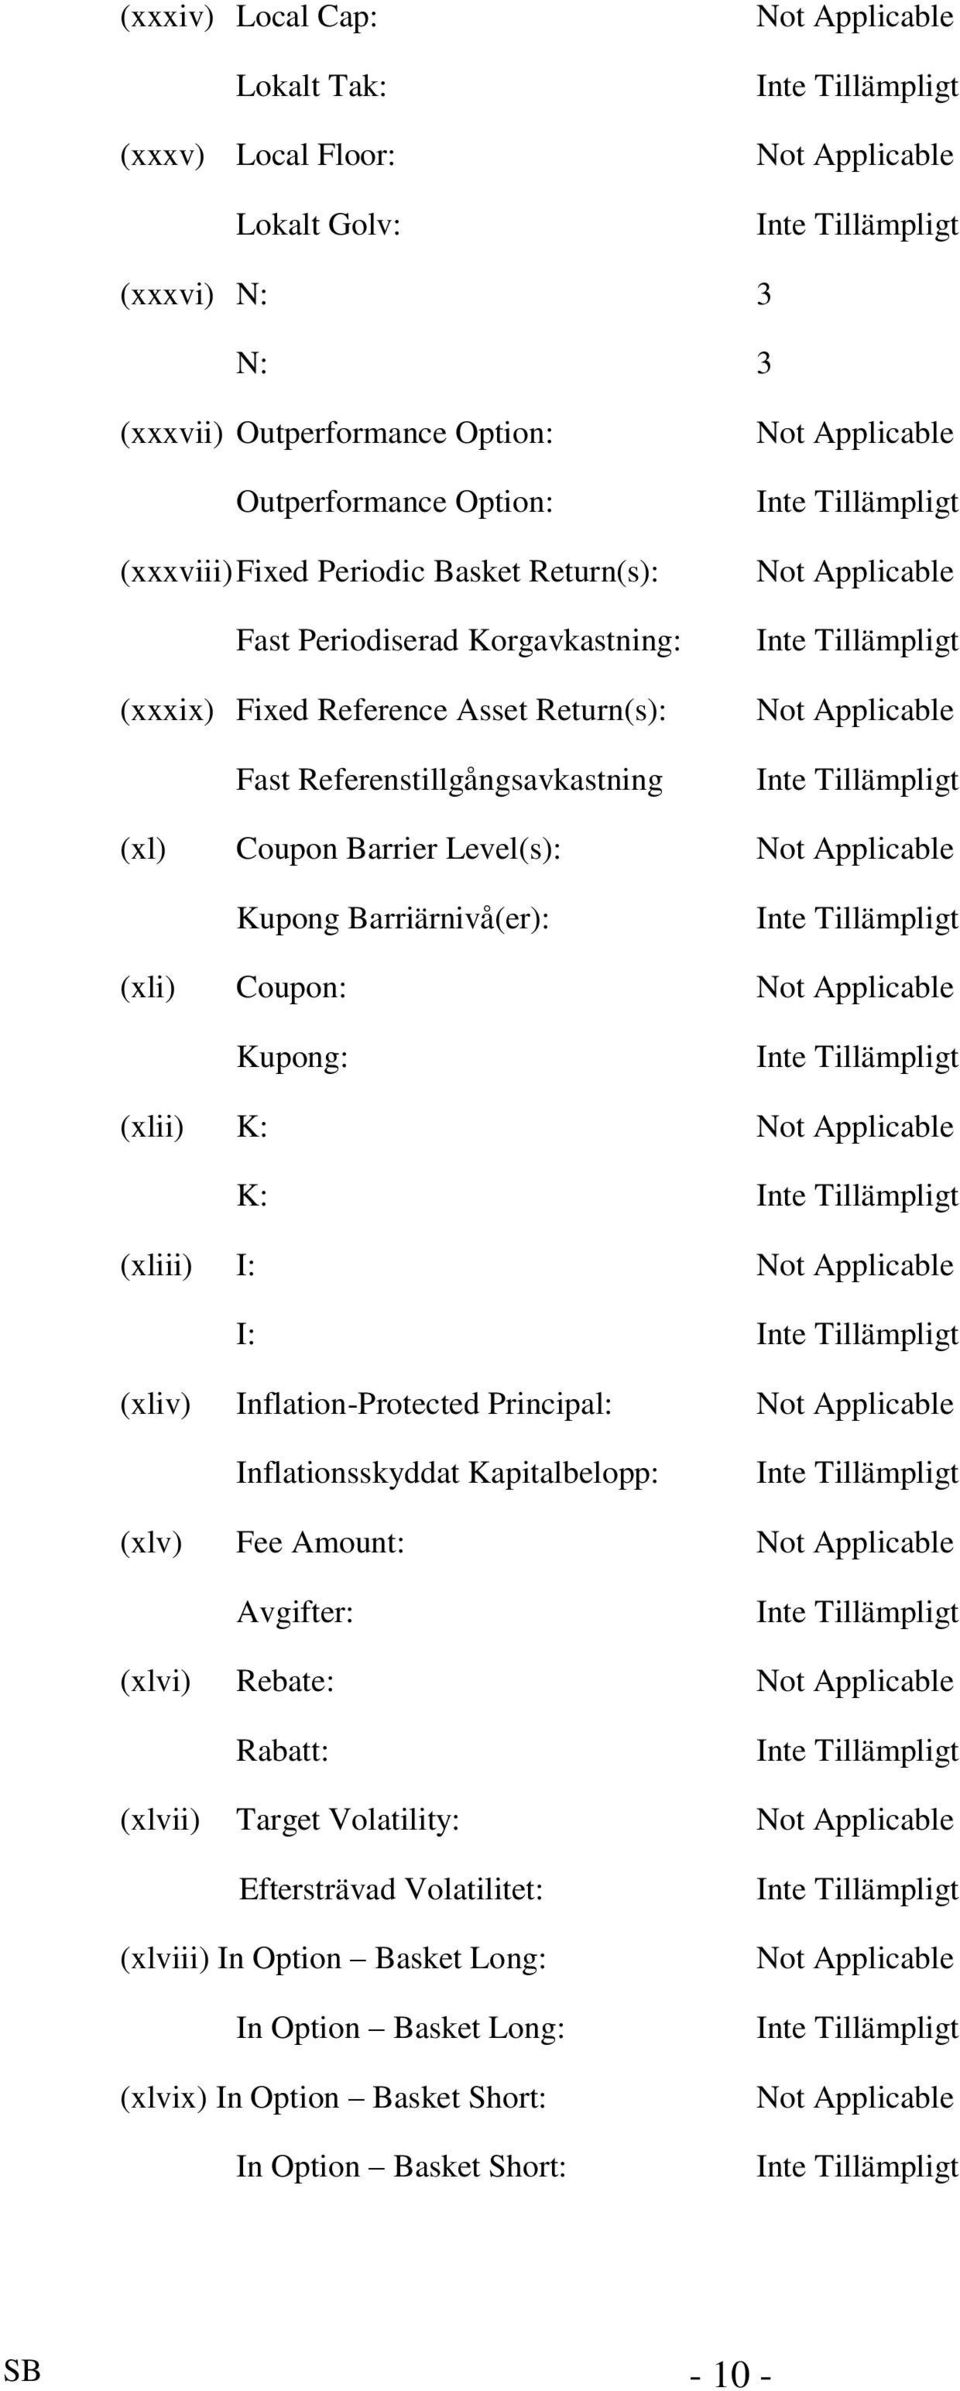 Applicable Kupong Barriärnivå(er): (xli) Coupon: Not Applicable Kupong: (xlii) K: Not Applicable K: (xliii) I: Not Applicable I: (xliv) Inflation-Protected Principal: Not Applicable Inflationsskyddat